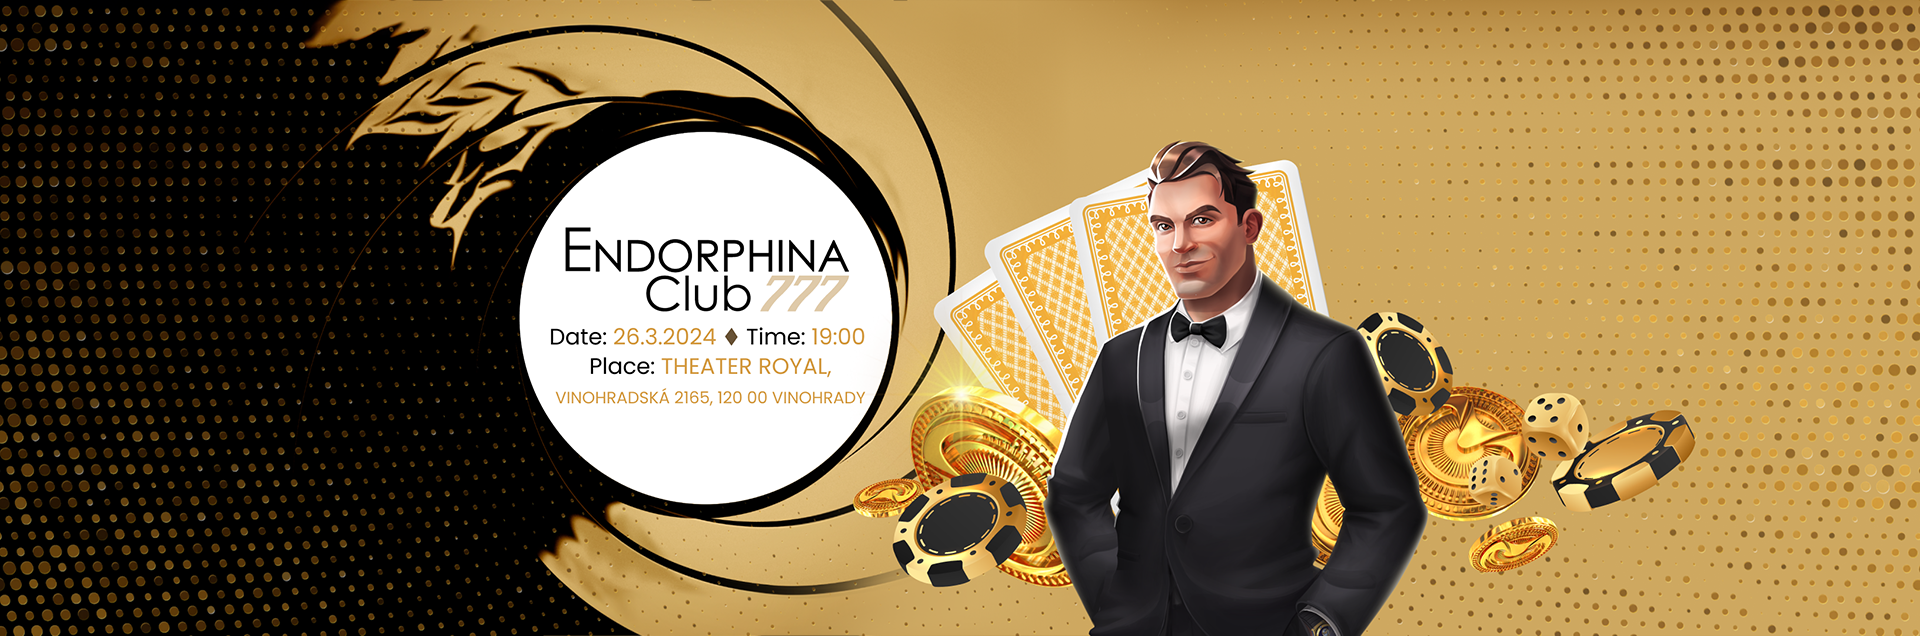 Endorphina Club Casino Royale 777